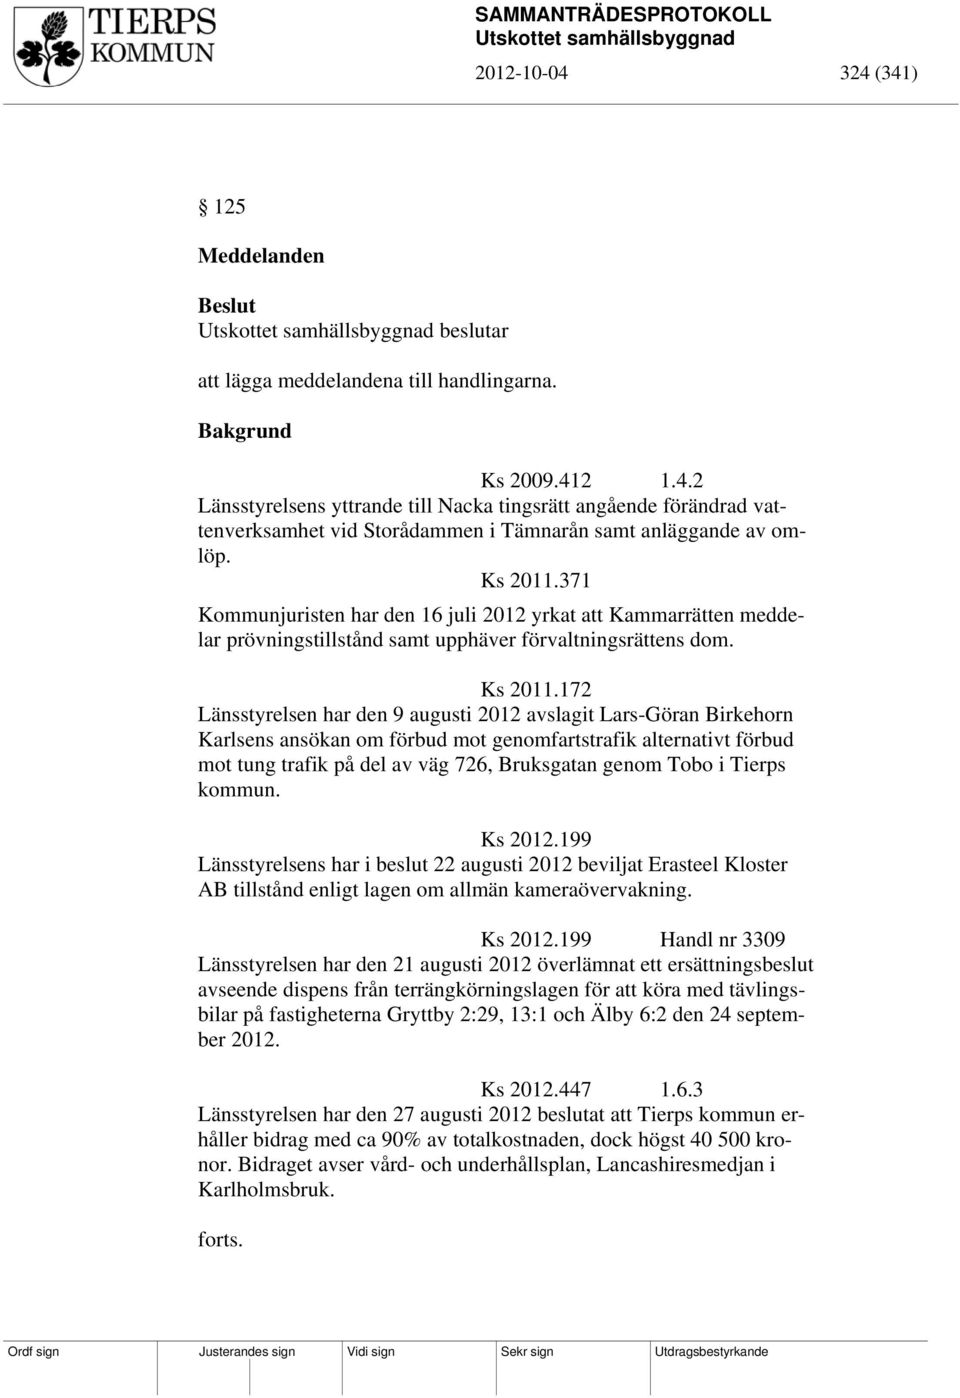 172 Länsstyrelsen har den 9 augusti 2012 avslagit Lars-Göran Birkehorn Karlsens ansökan om förbud mot genomfartstrafik alternativt förbud mot tung trafik på del av väg 726, Bruksgatan genom Tobo i